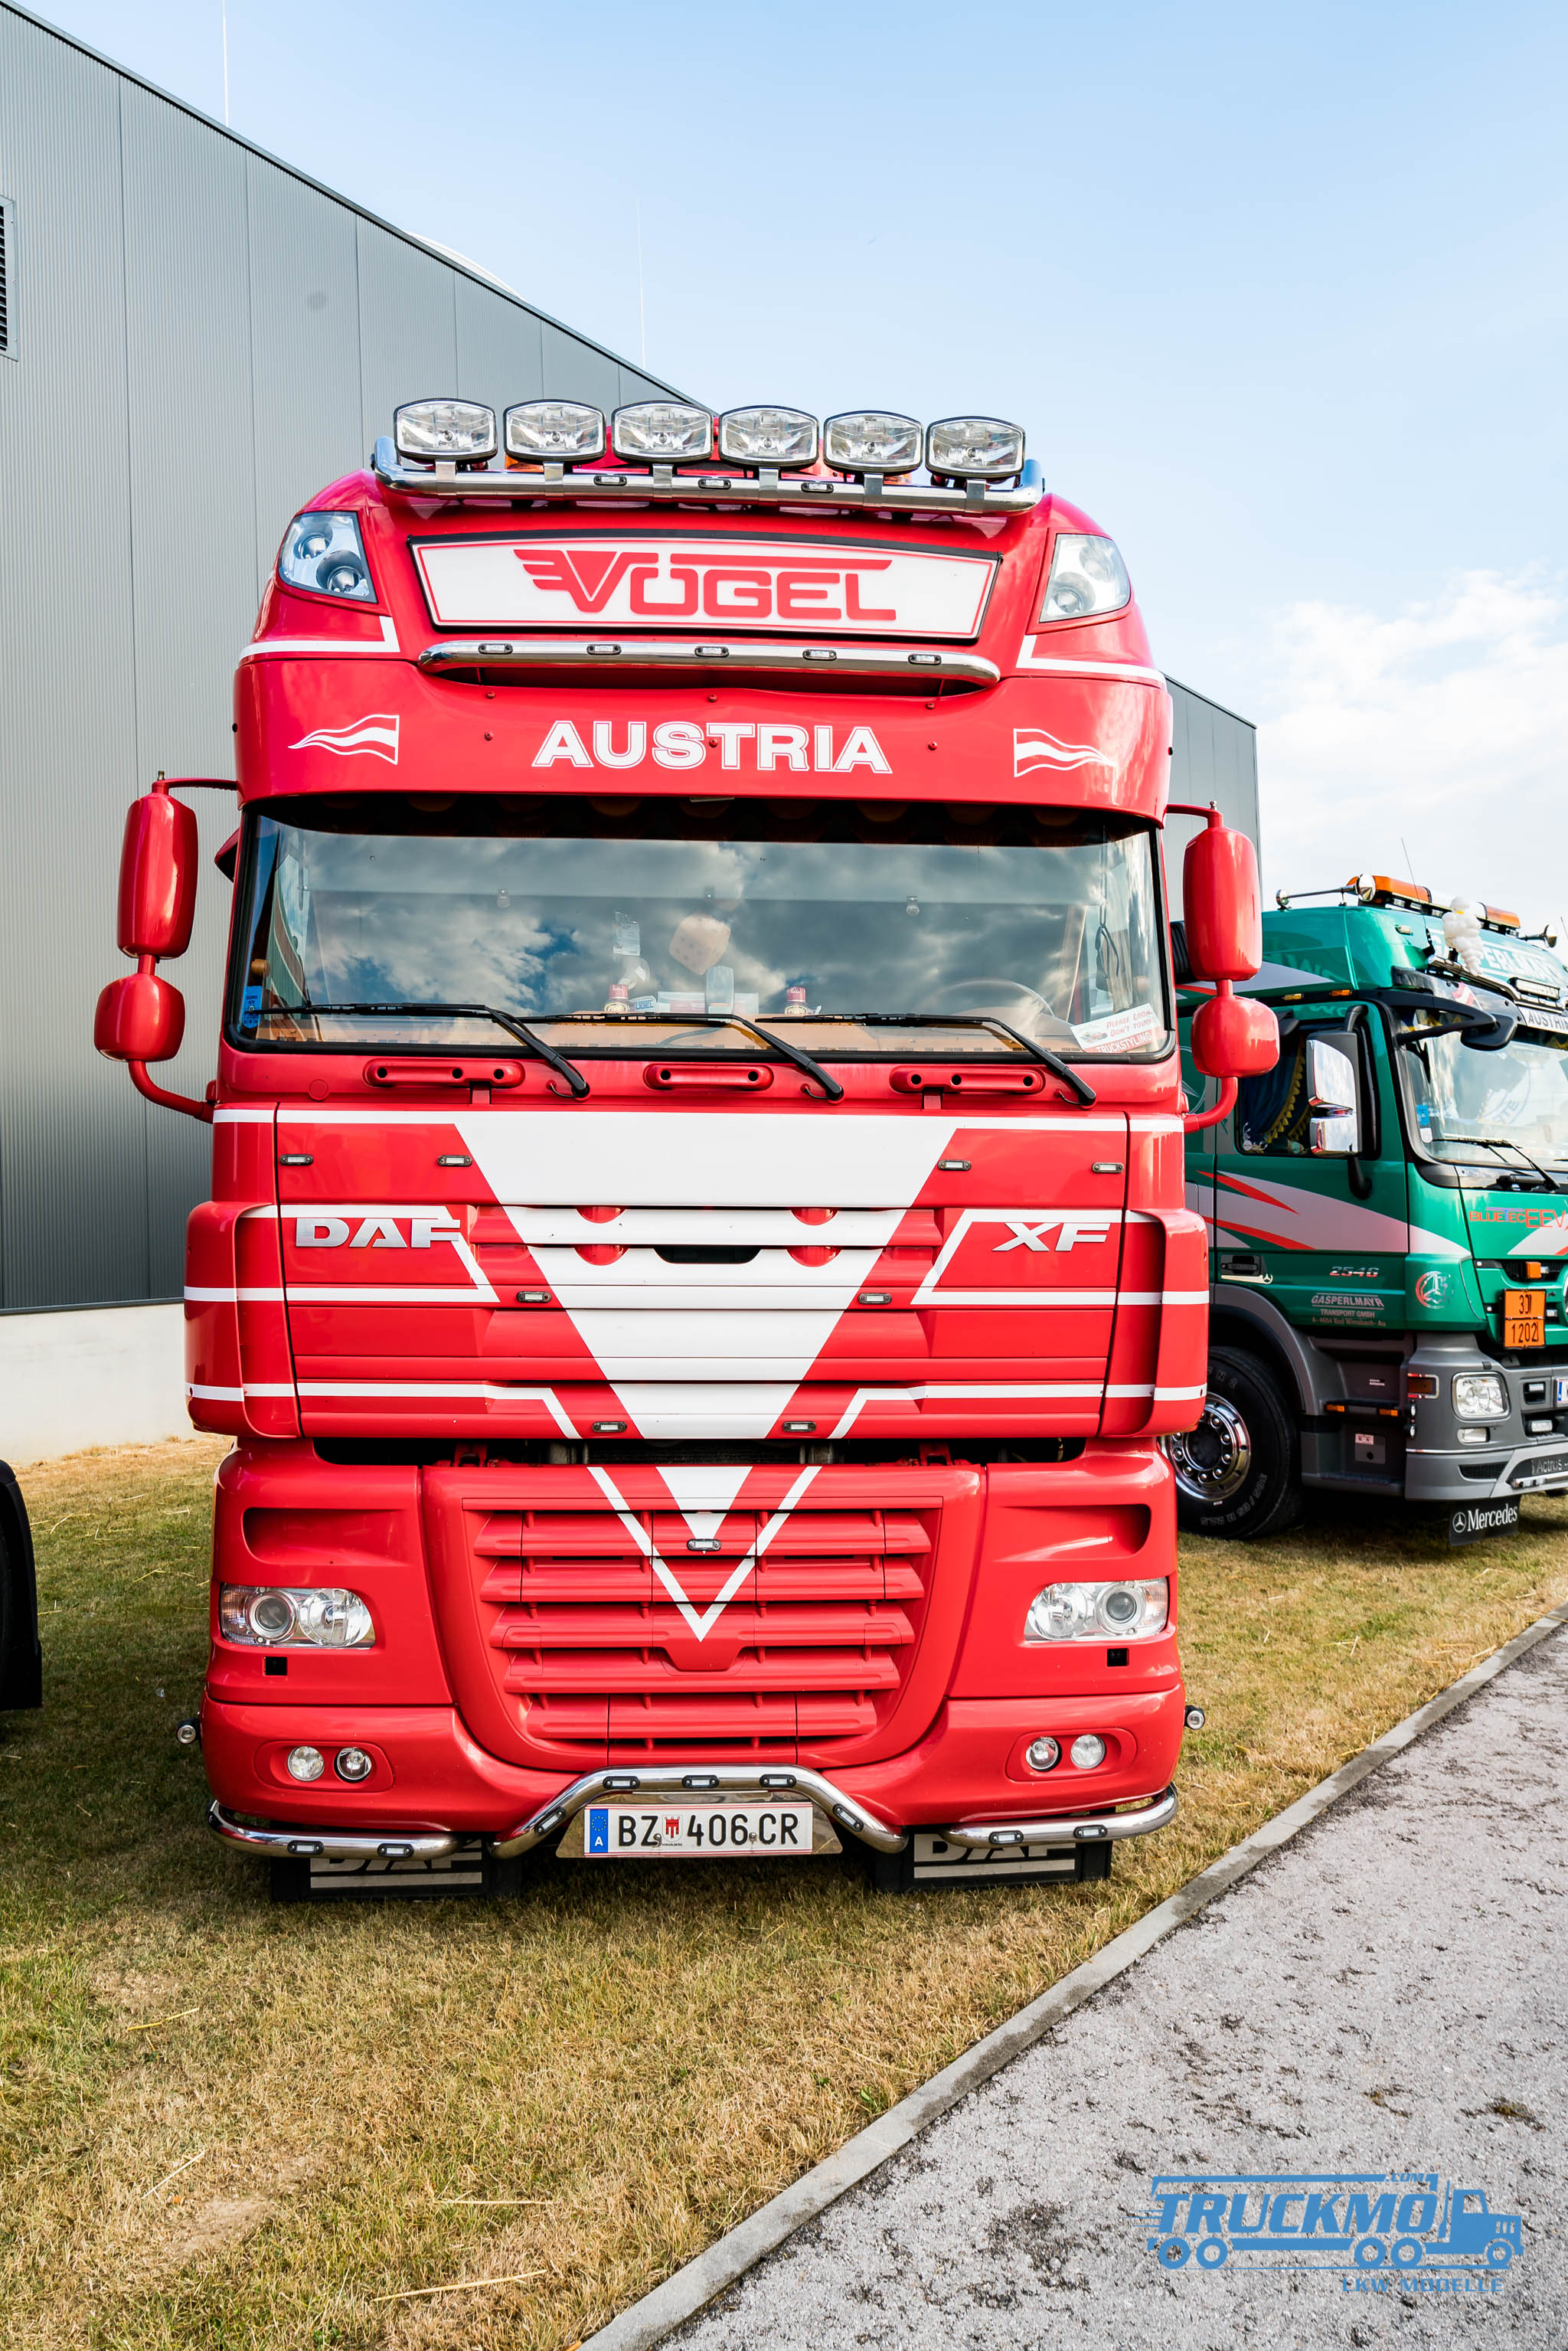 Truck_Event_Austria_Vorchdorf_2017_Truckmo_Scania_MAN_Volvo_Mercedes_Iveco_Showtruck_LKW (29 von 96)